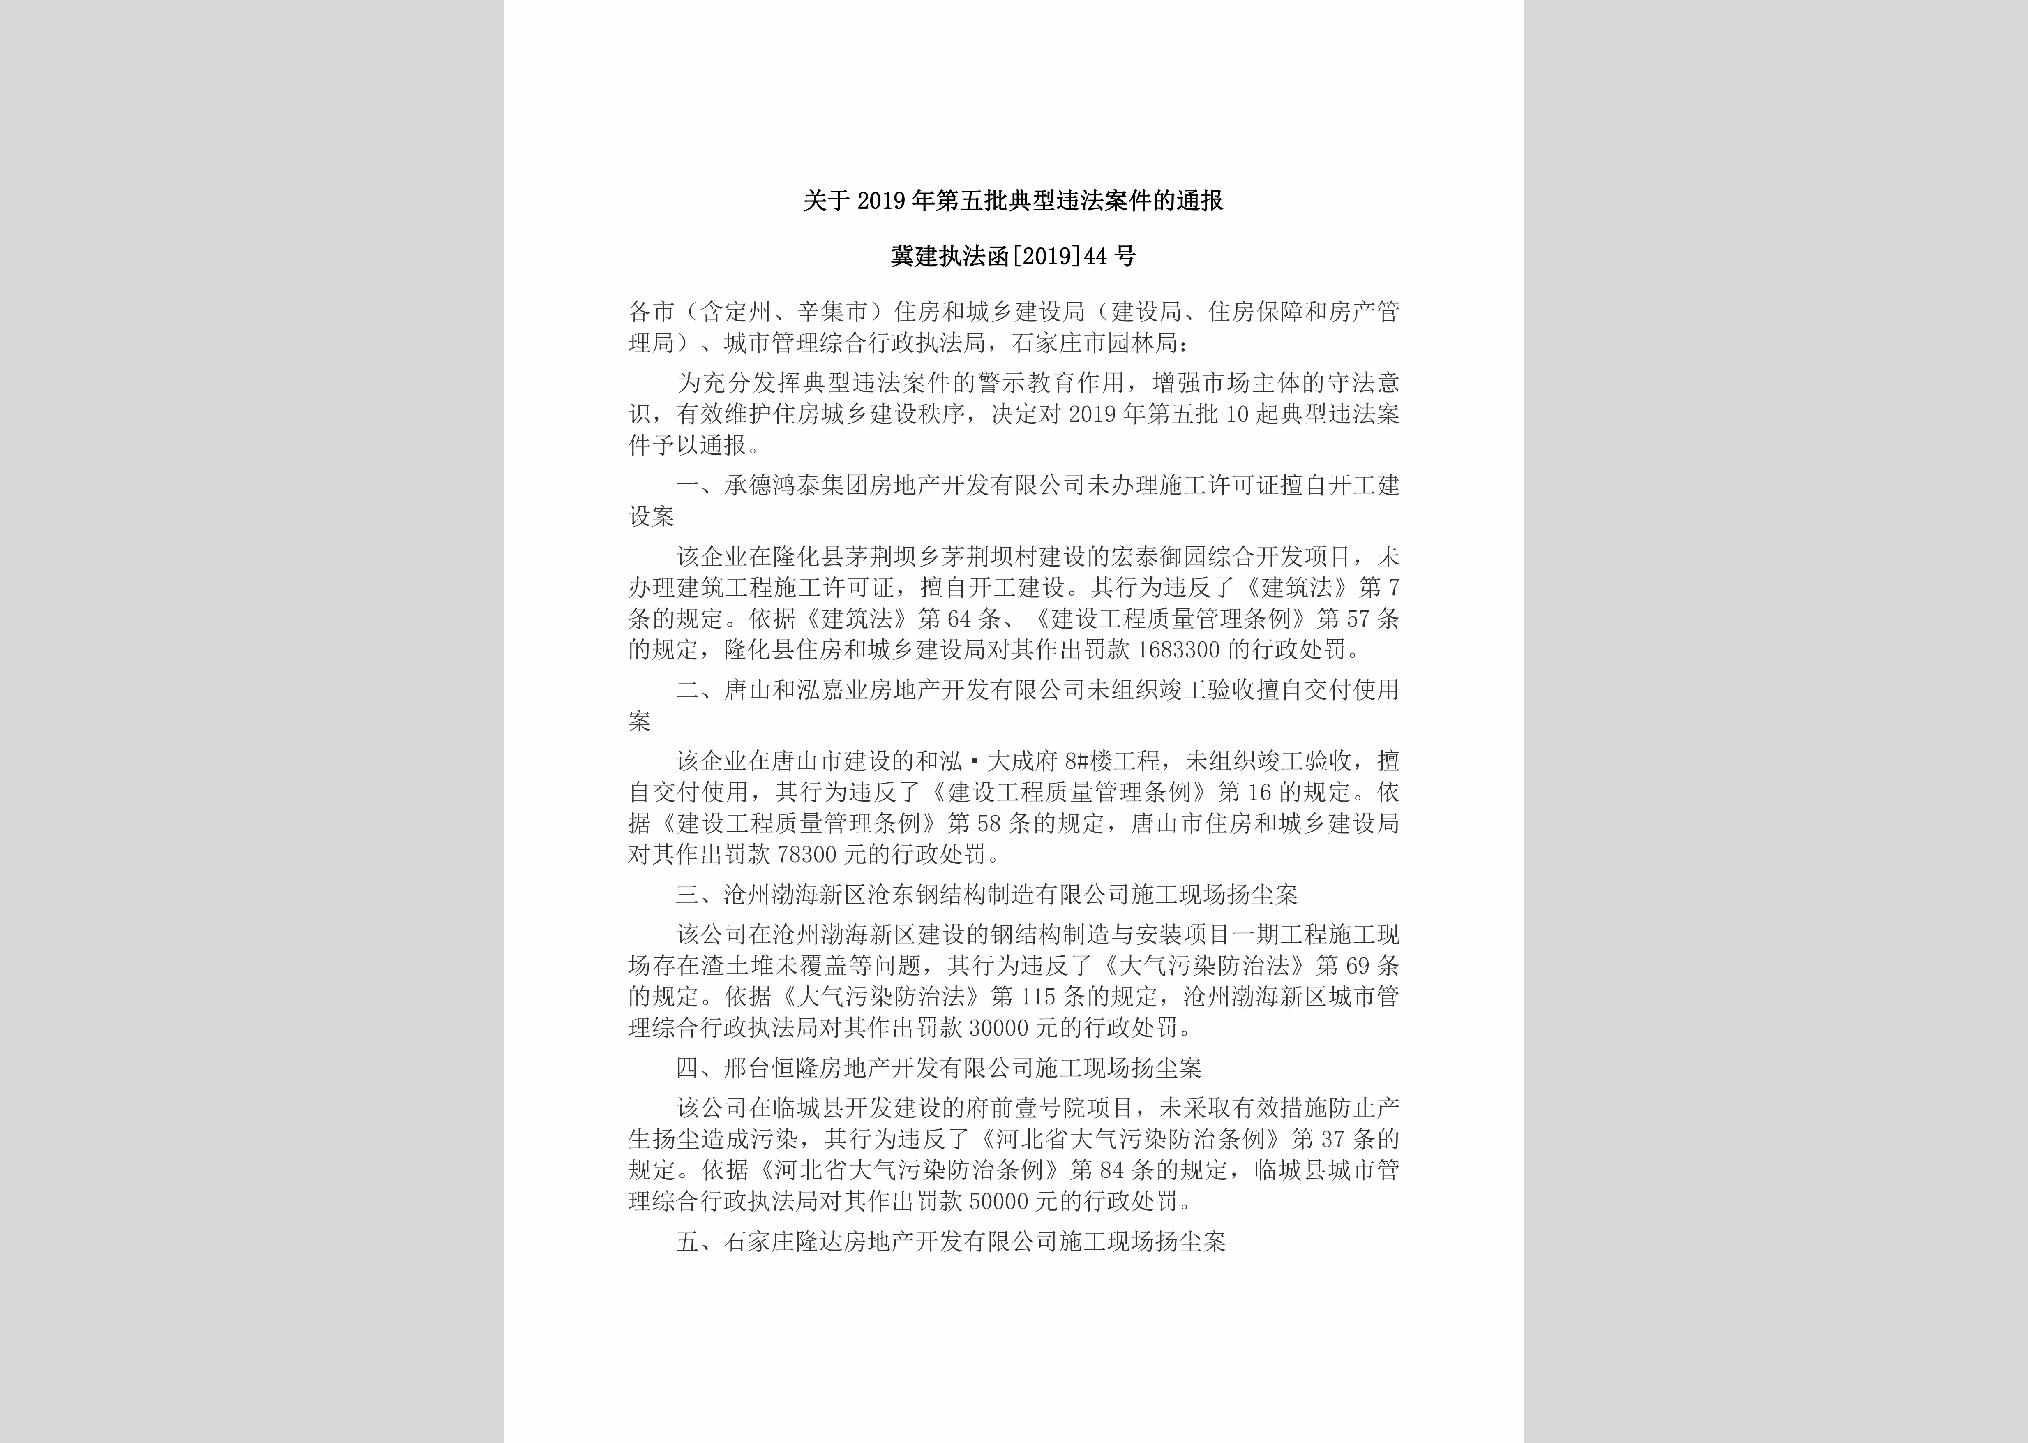 冀建执法函[2019]44号：关于2019年第五批典型违法案件的通报